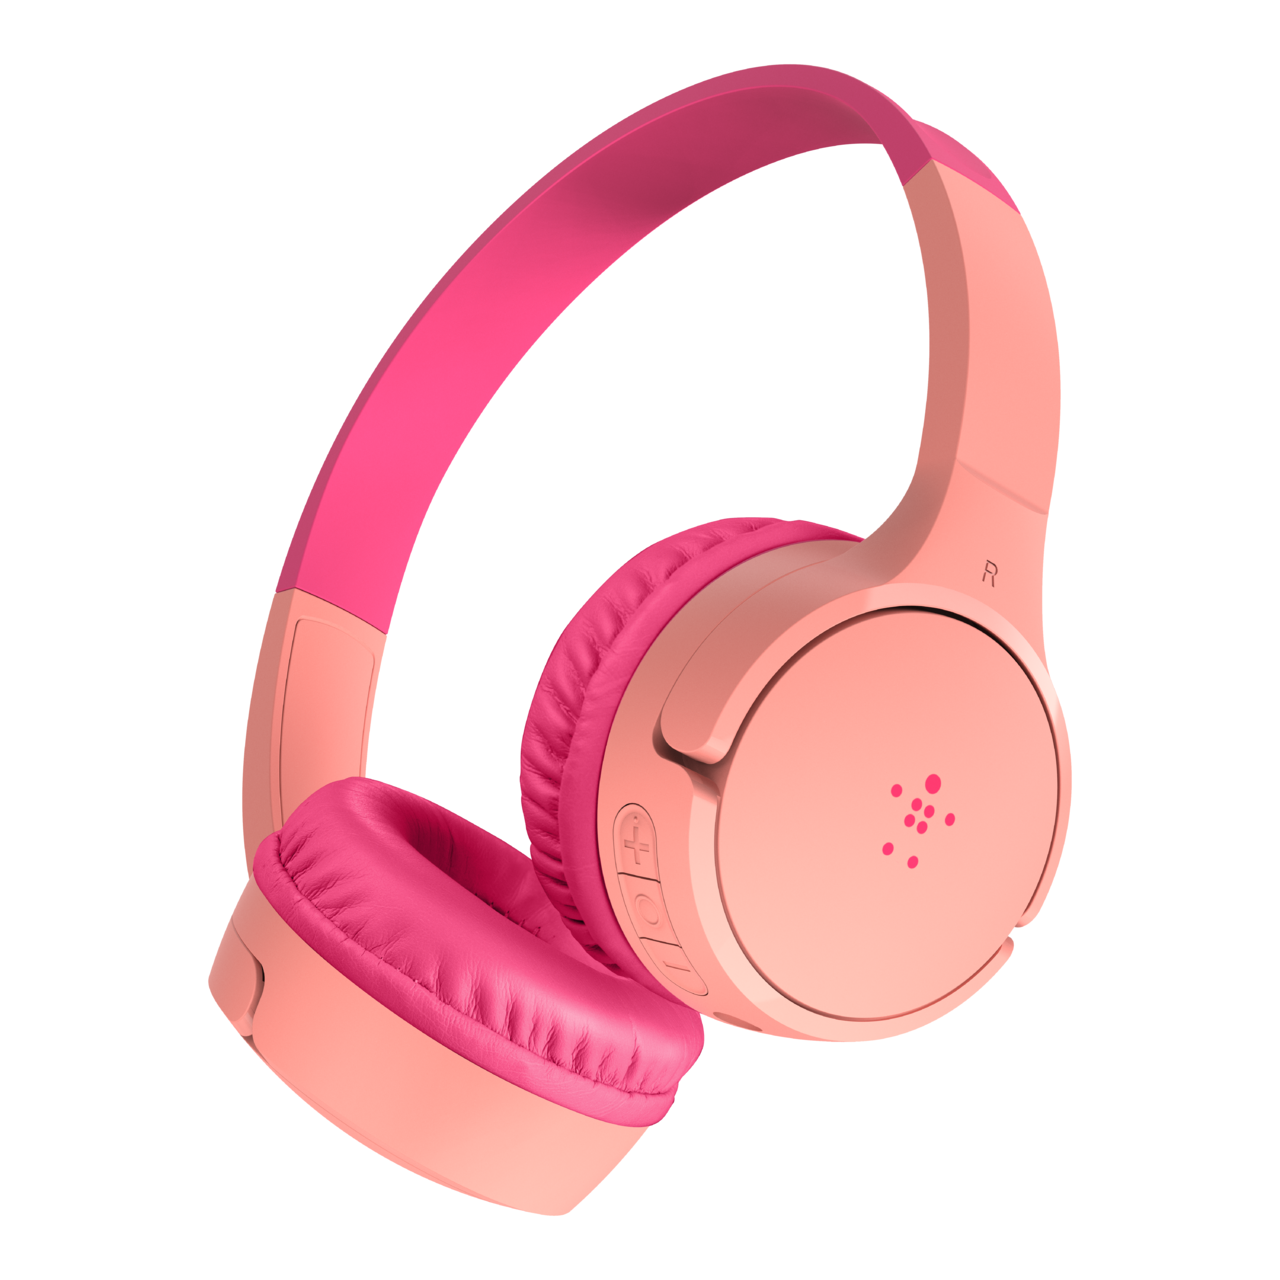 Belkin SoundForm Mini Wireless On-Ear Headphones for Kids, Pink